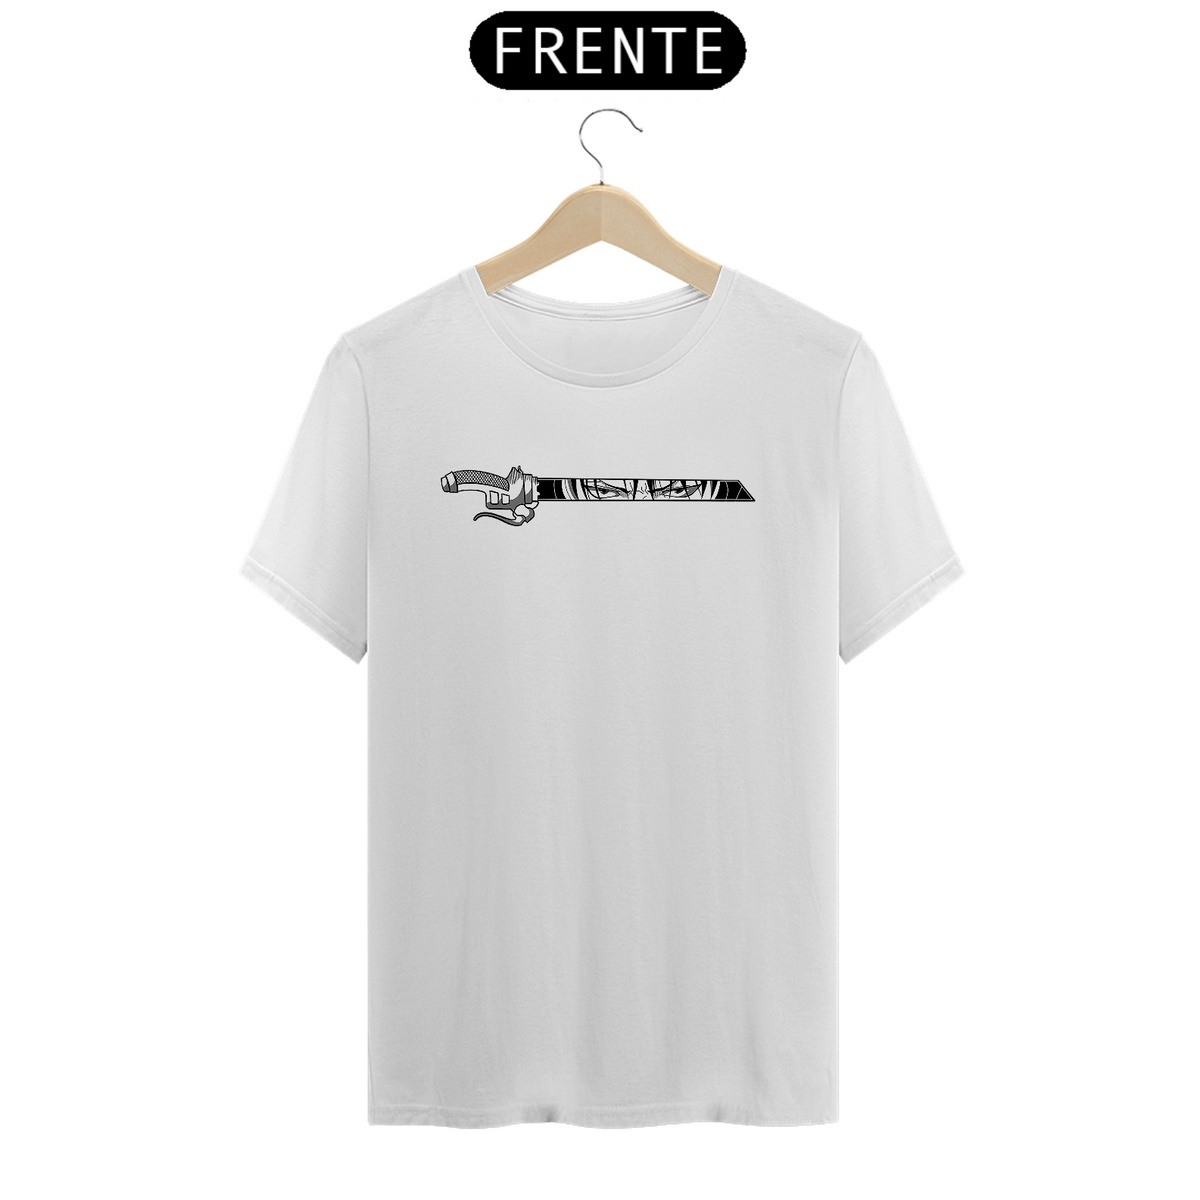 Nome do produto: Camiseta Branca - Levi